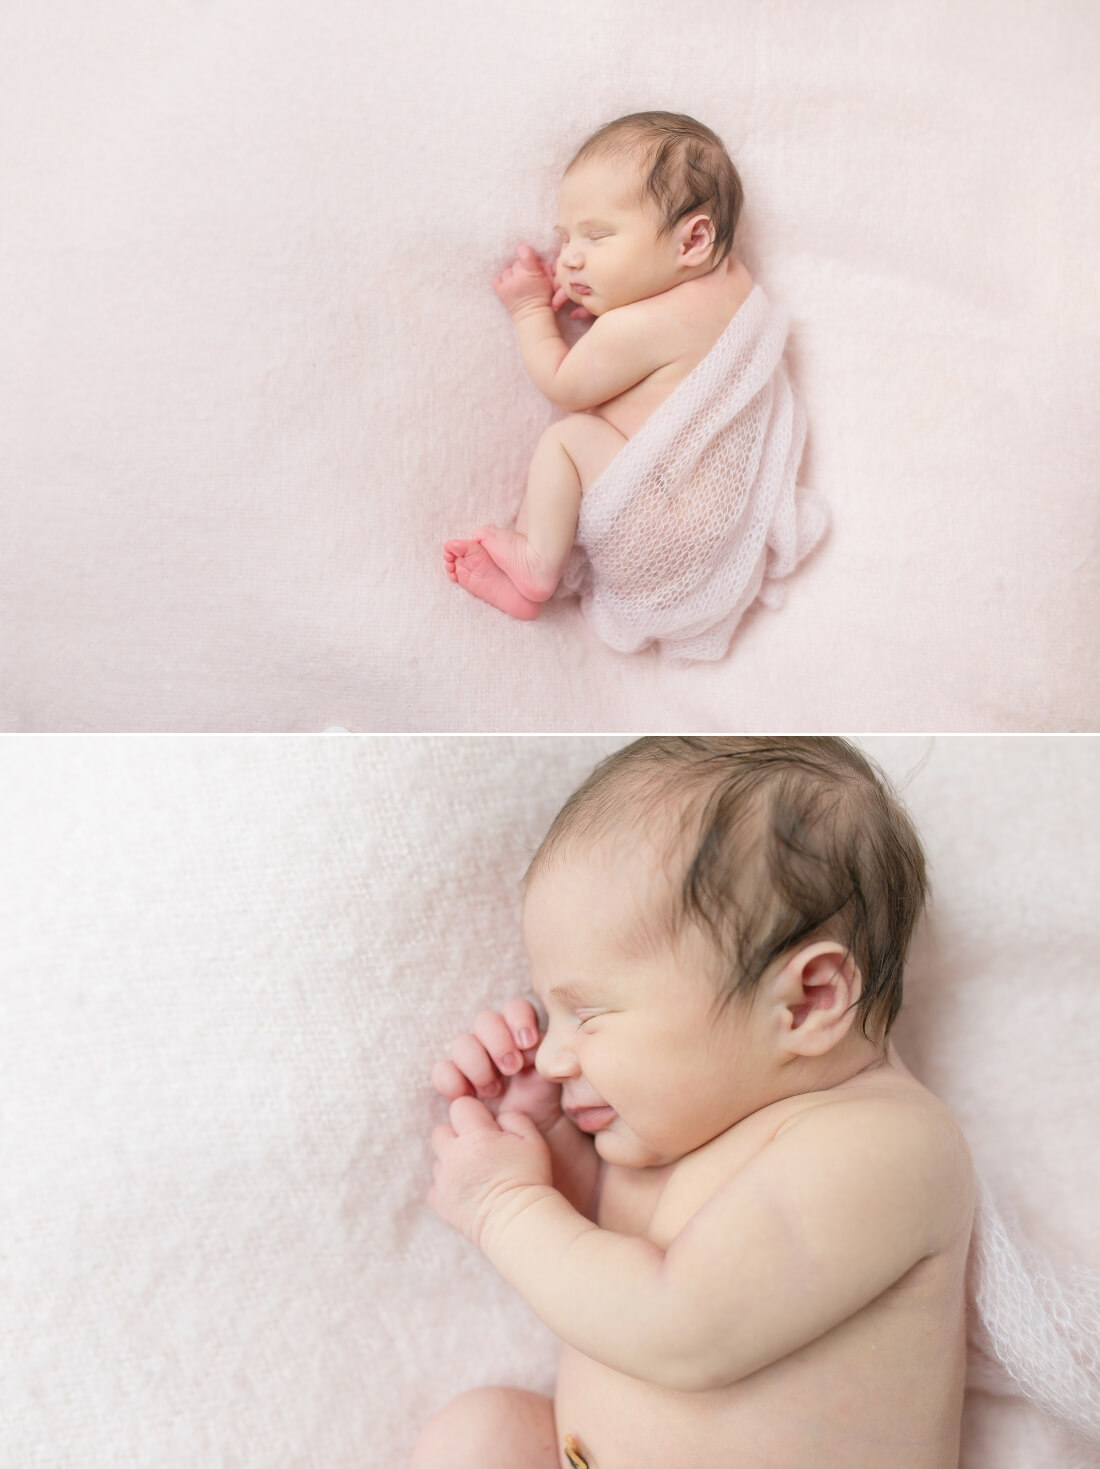 Séance photo naissance - Photographe spécialiste bébé à Tours 37 - Entre Nous Photographie